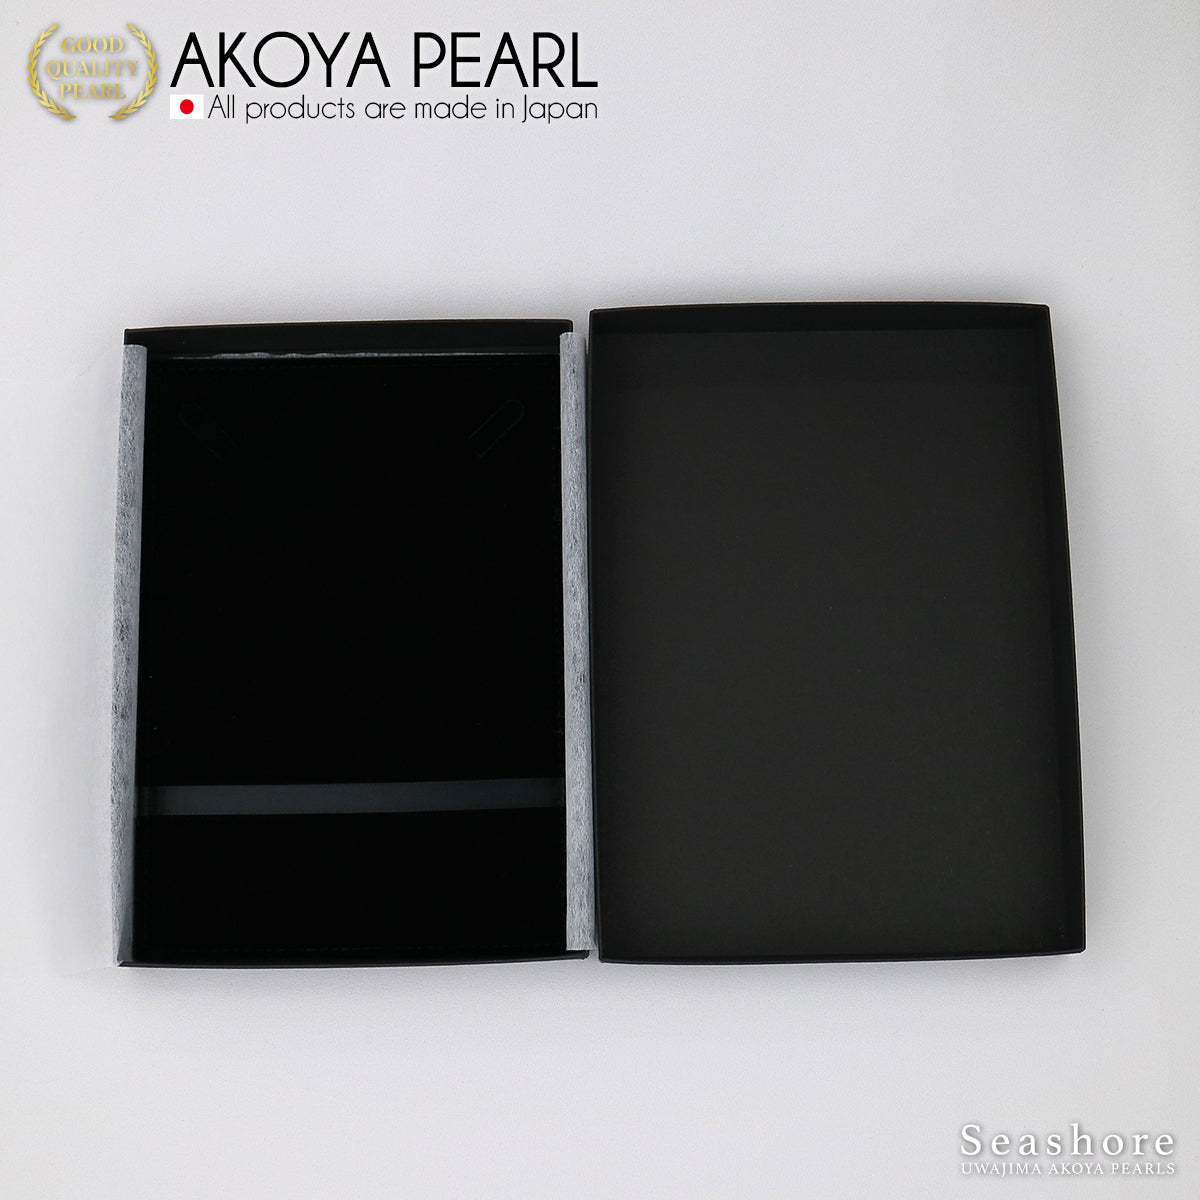 オメガ紙製ケース ネックレスケース ブラック/ライトグレー(1.0.745.850)